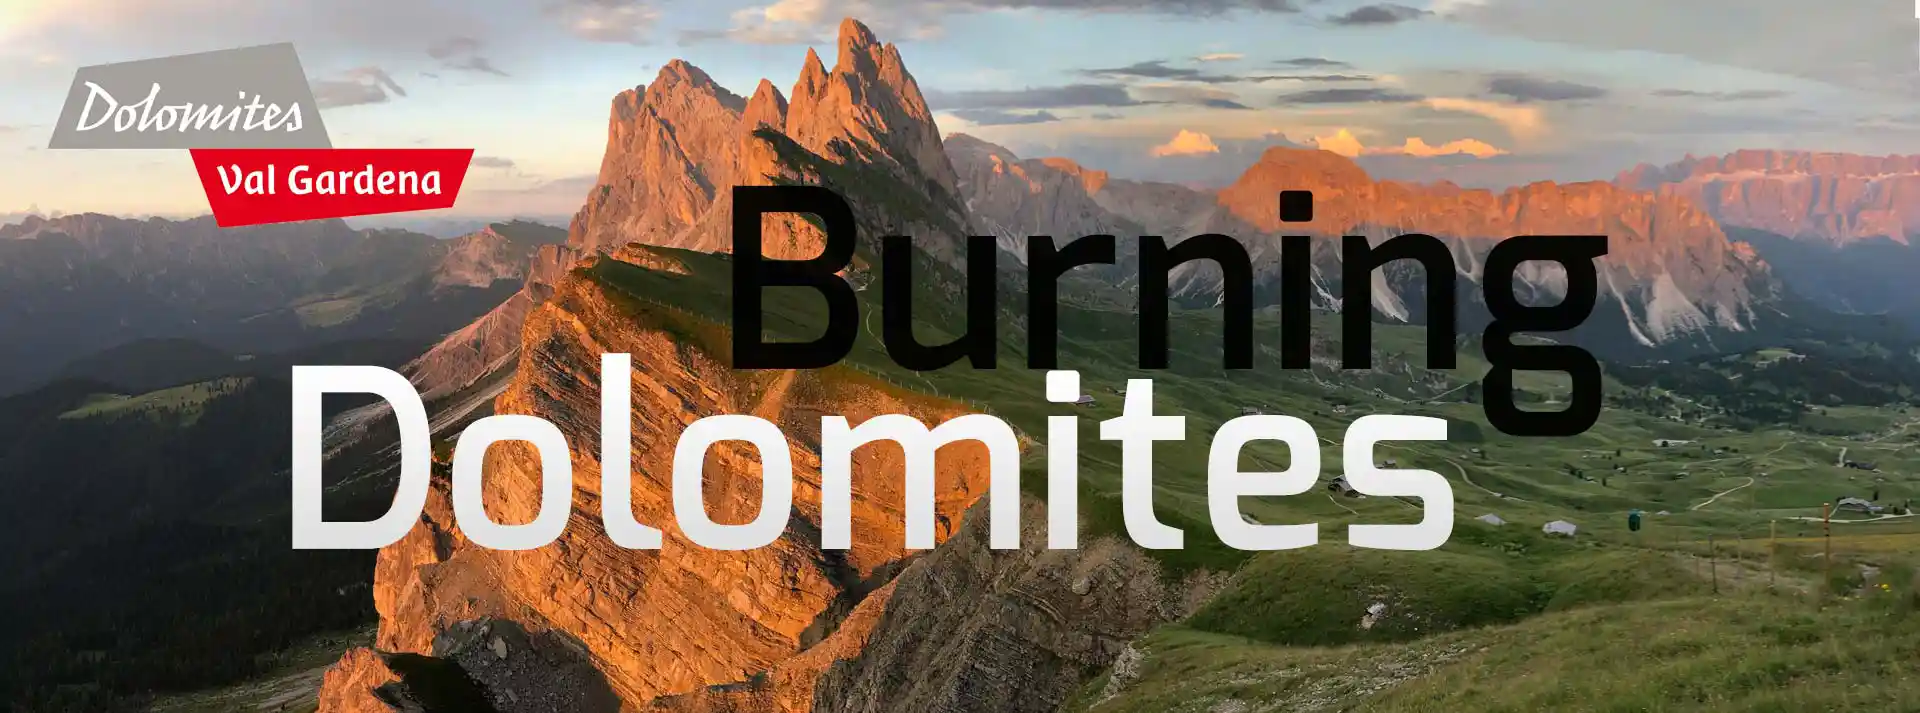 header Burning Dolomites - le Dolomiti autunno si accendono di colori